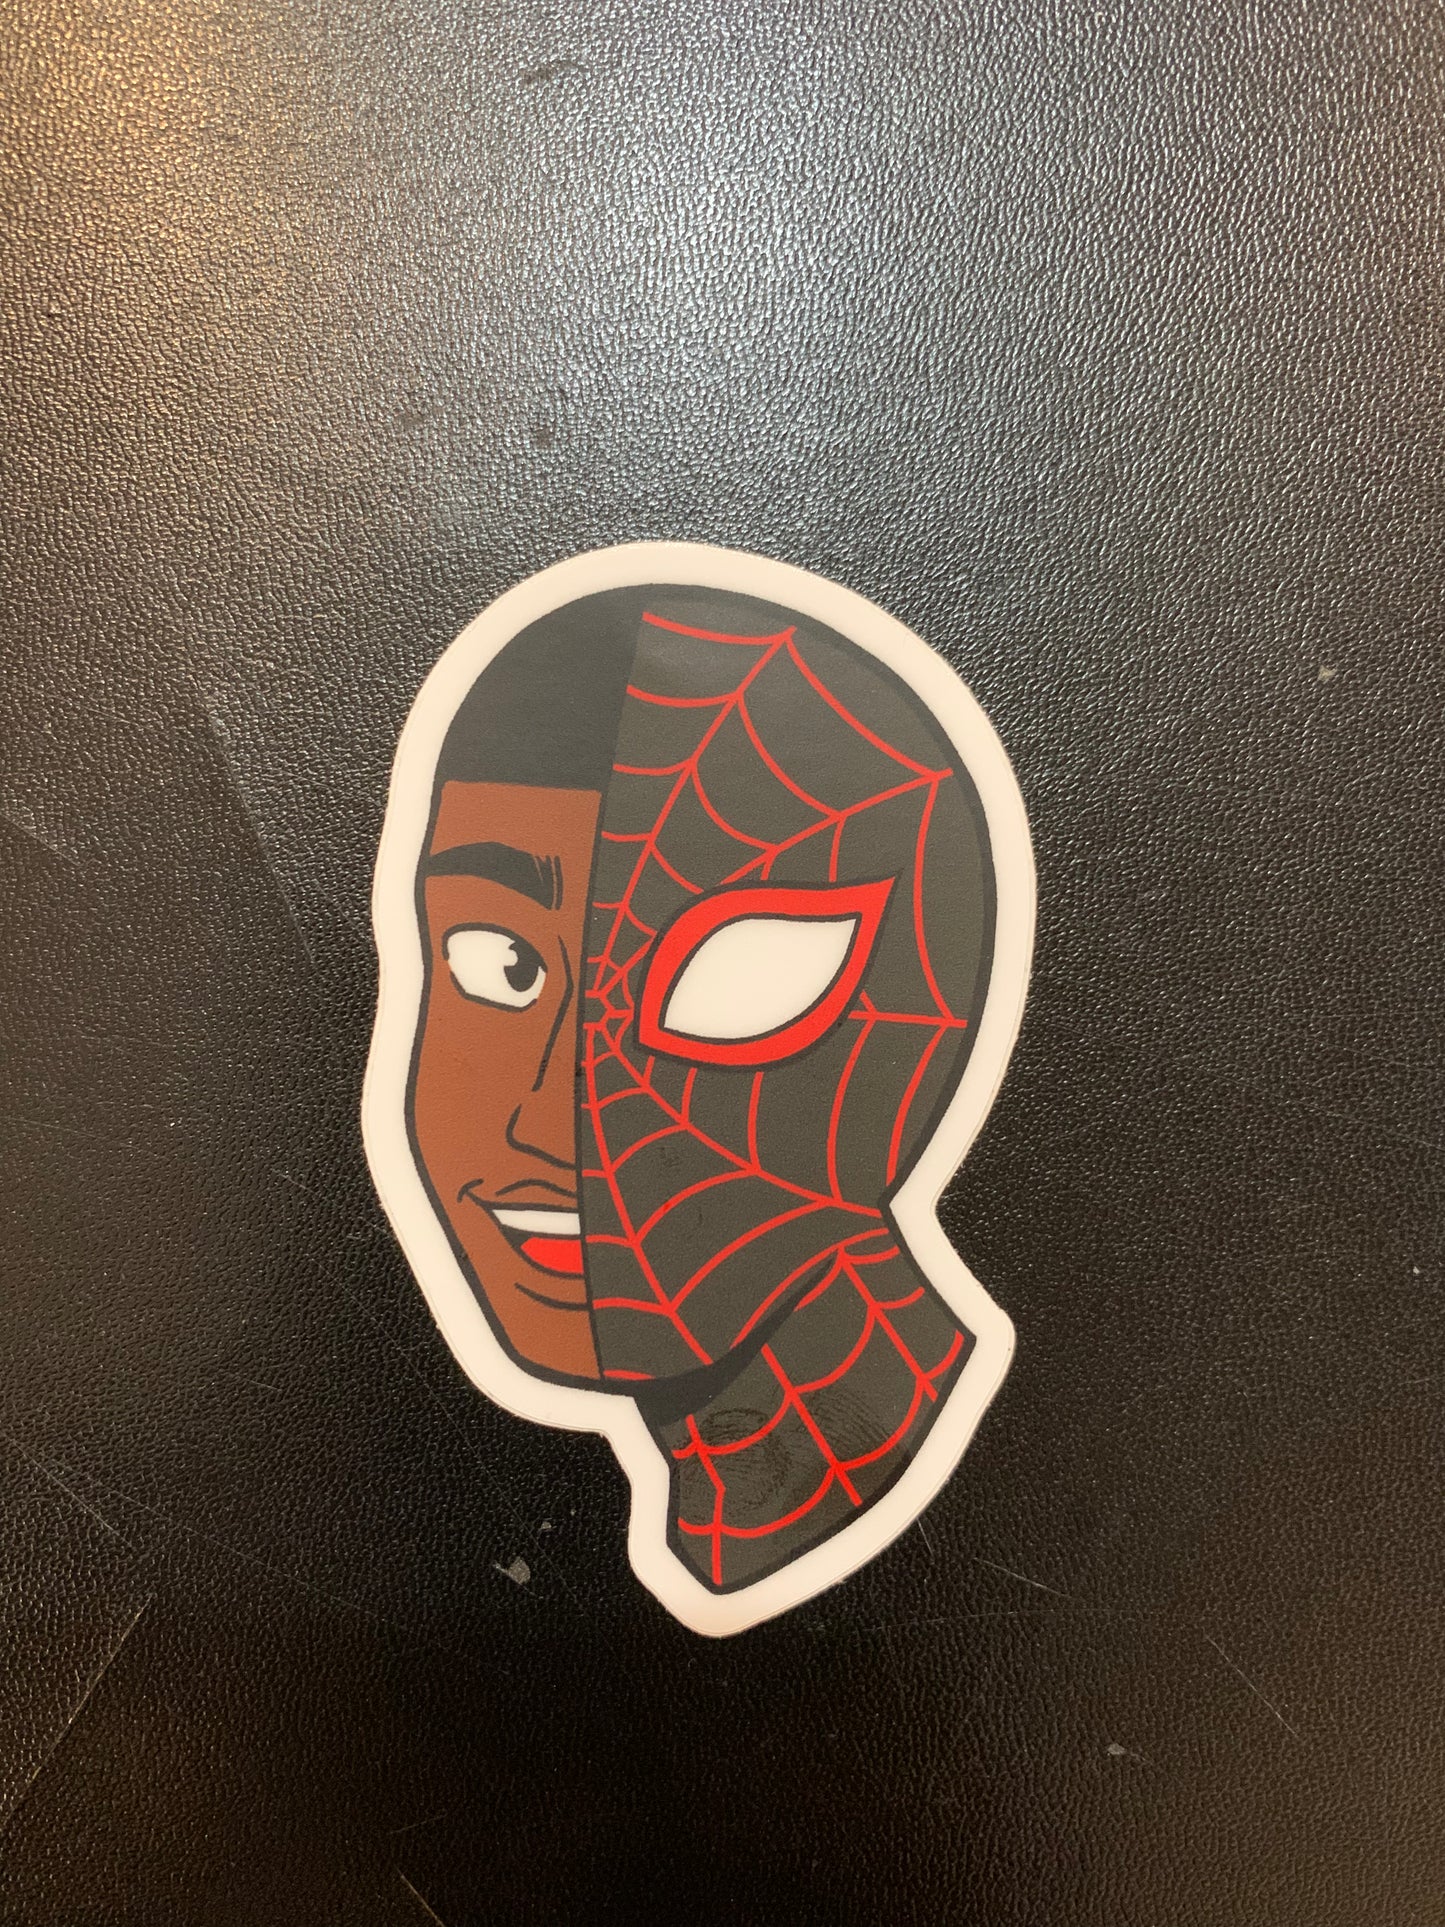 Spider-Man portrait Sticker